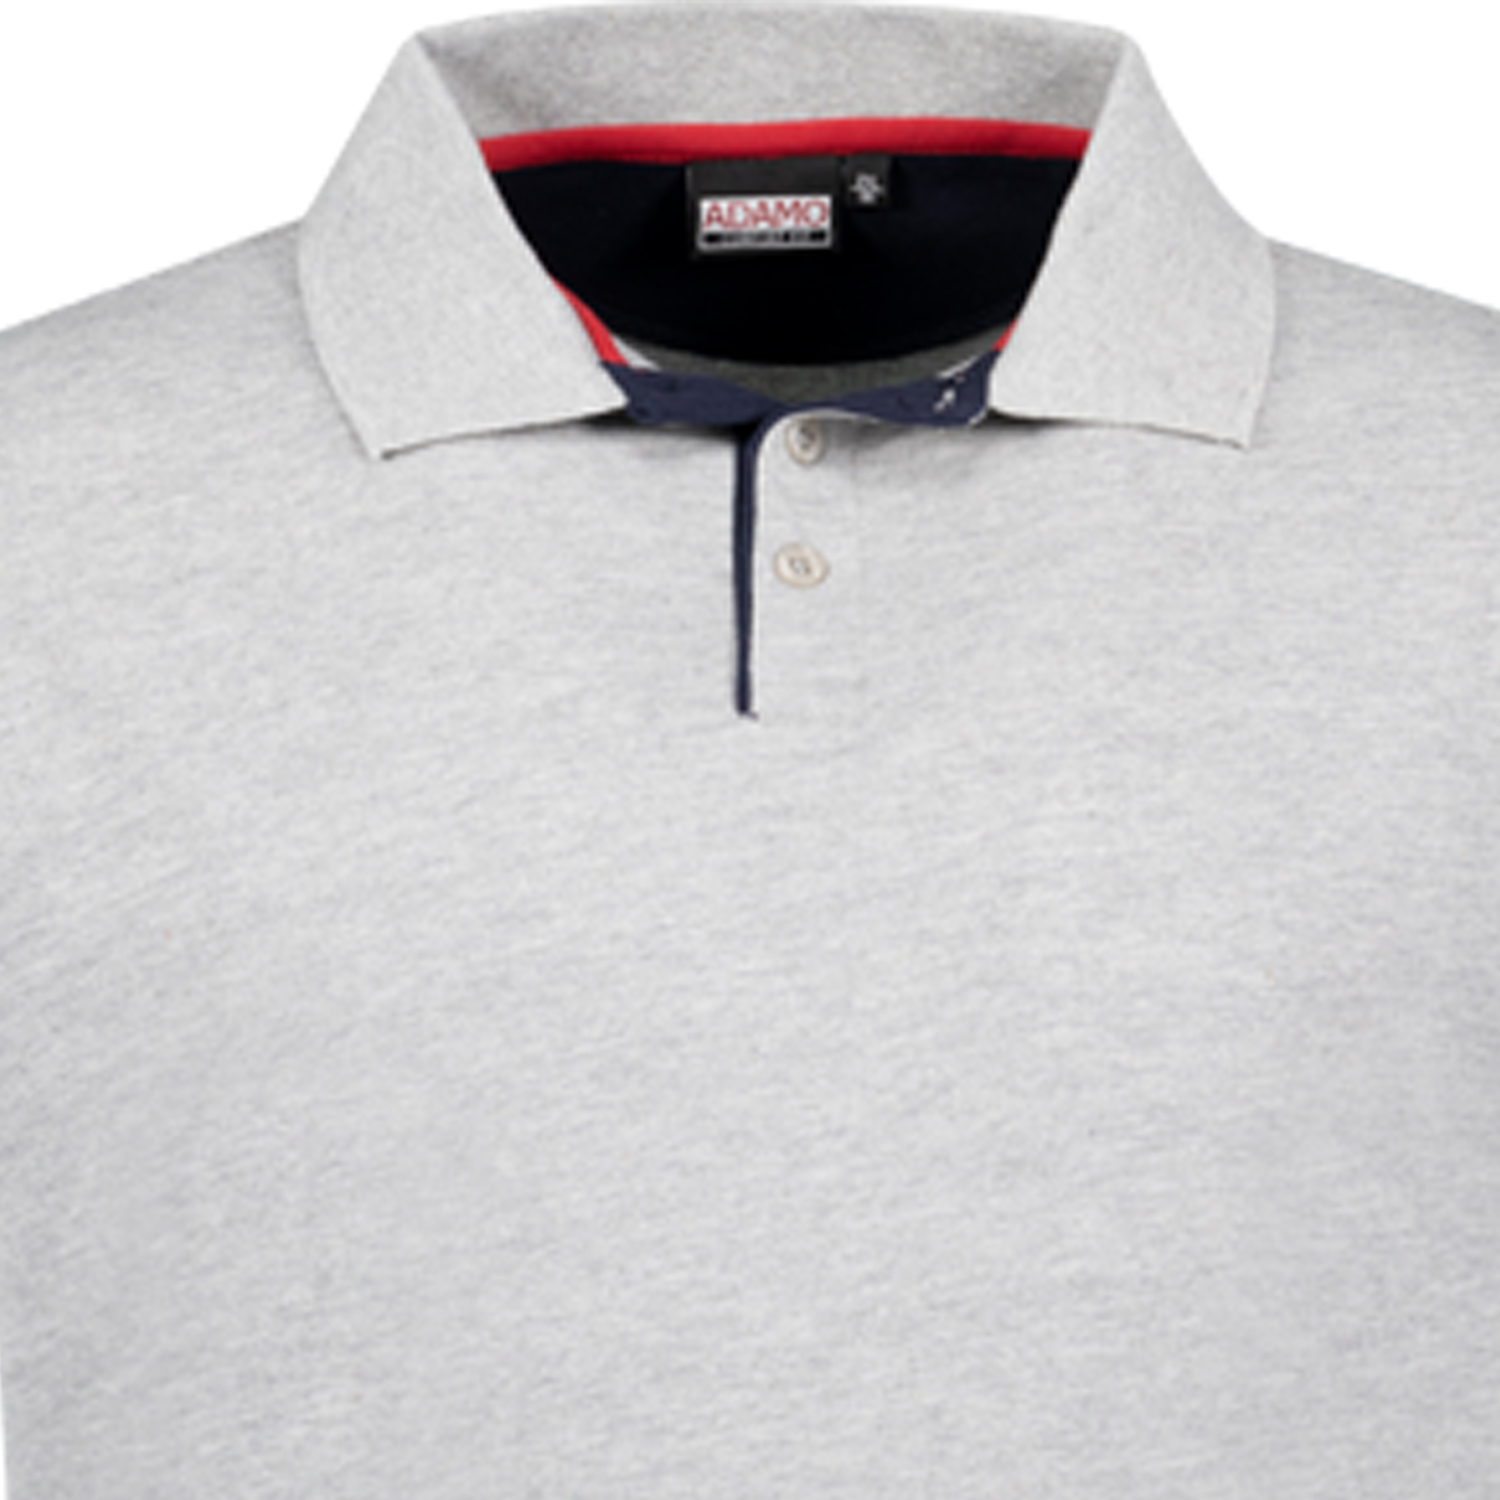 Adamo Herren Poloshirt Modell Pablo Singlepique 180 graumeliert COMFORT FIT in Übergrößen 2XL bis 12XL